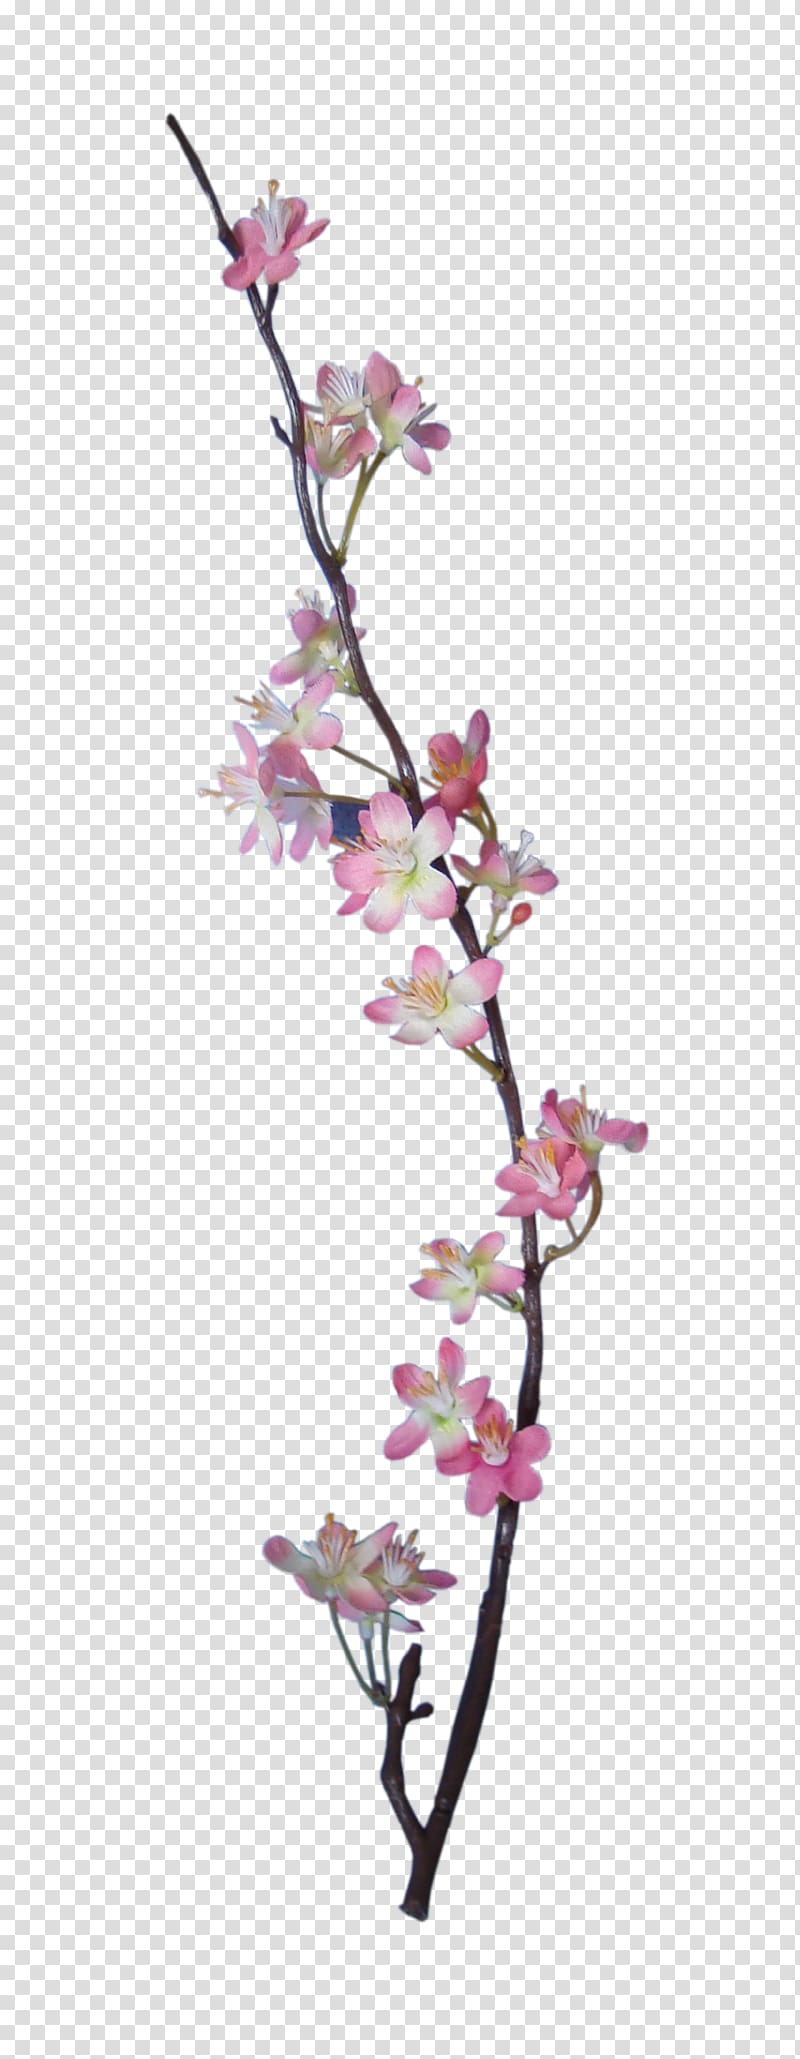 Embellishment Flower Digital scrapbooking Apple, BLOSSOM transparent background PNG clipart